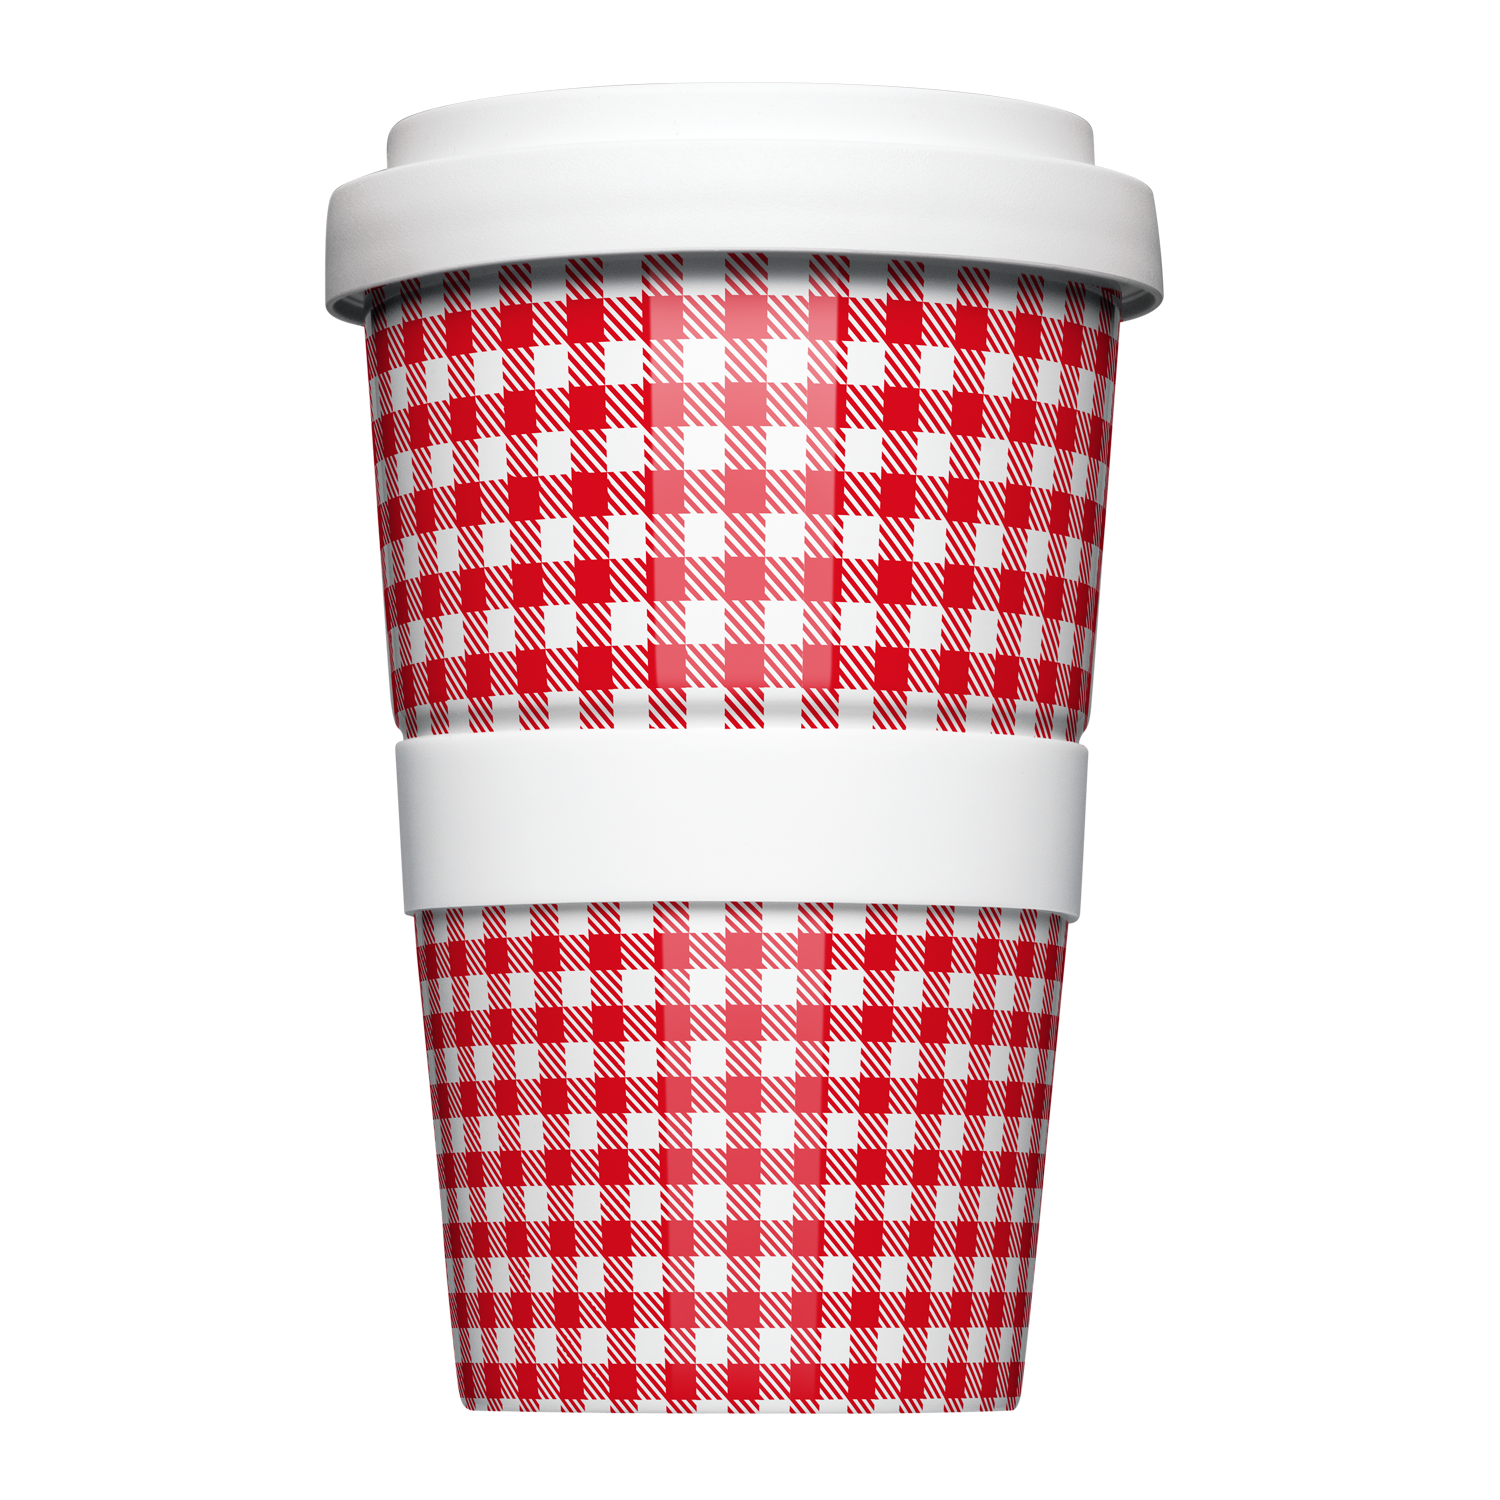 Mehrweg Coffee-to-Go Becher mit geometrischem Muster